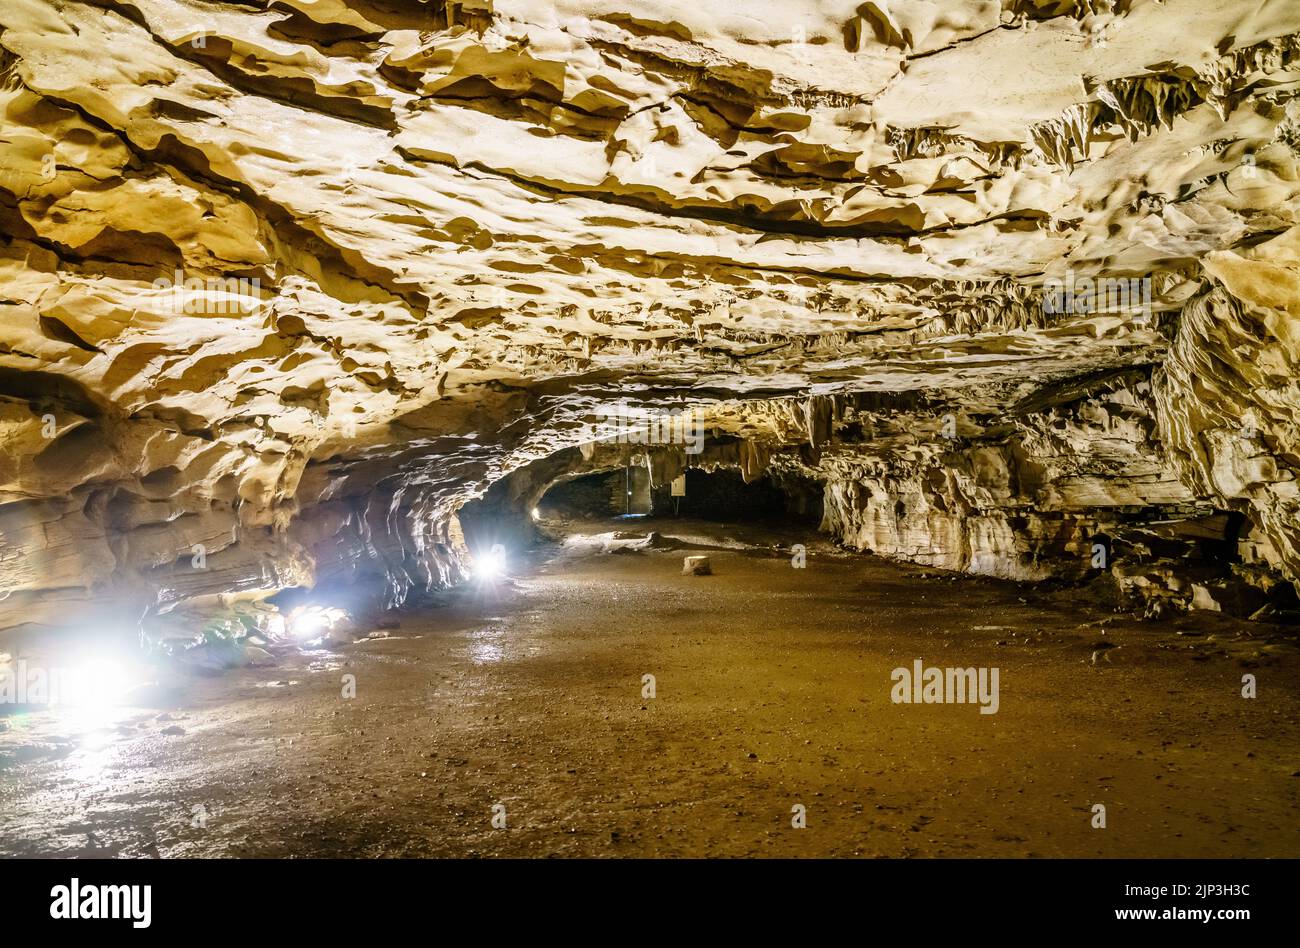 Grotte en cascade dans le parc national carter Caves dans le Kentucky Banque D'Images